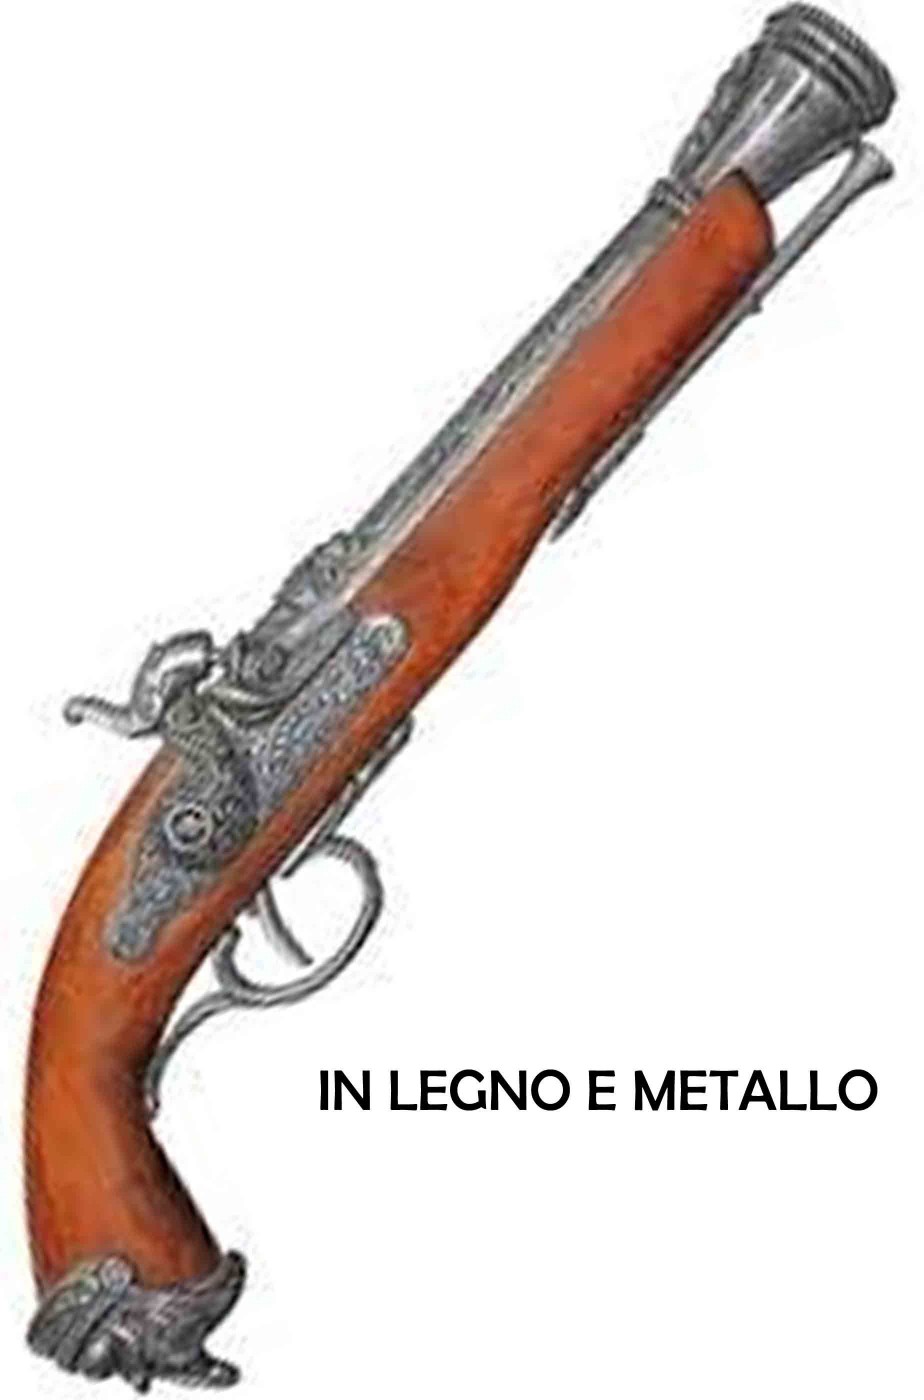 Pistola da Pirata replica metallo e legno 